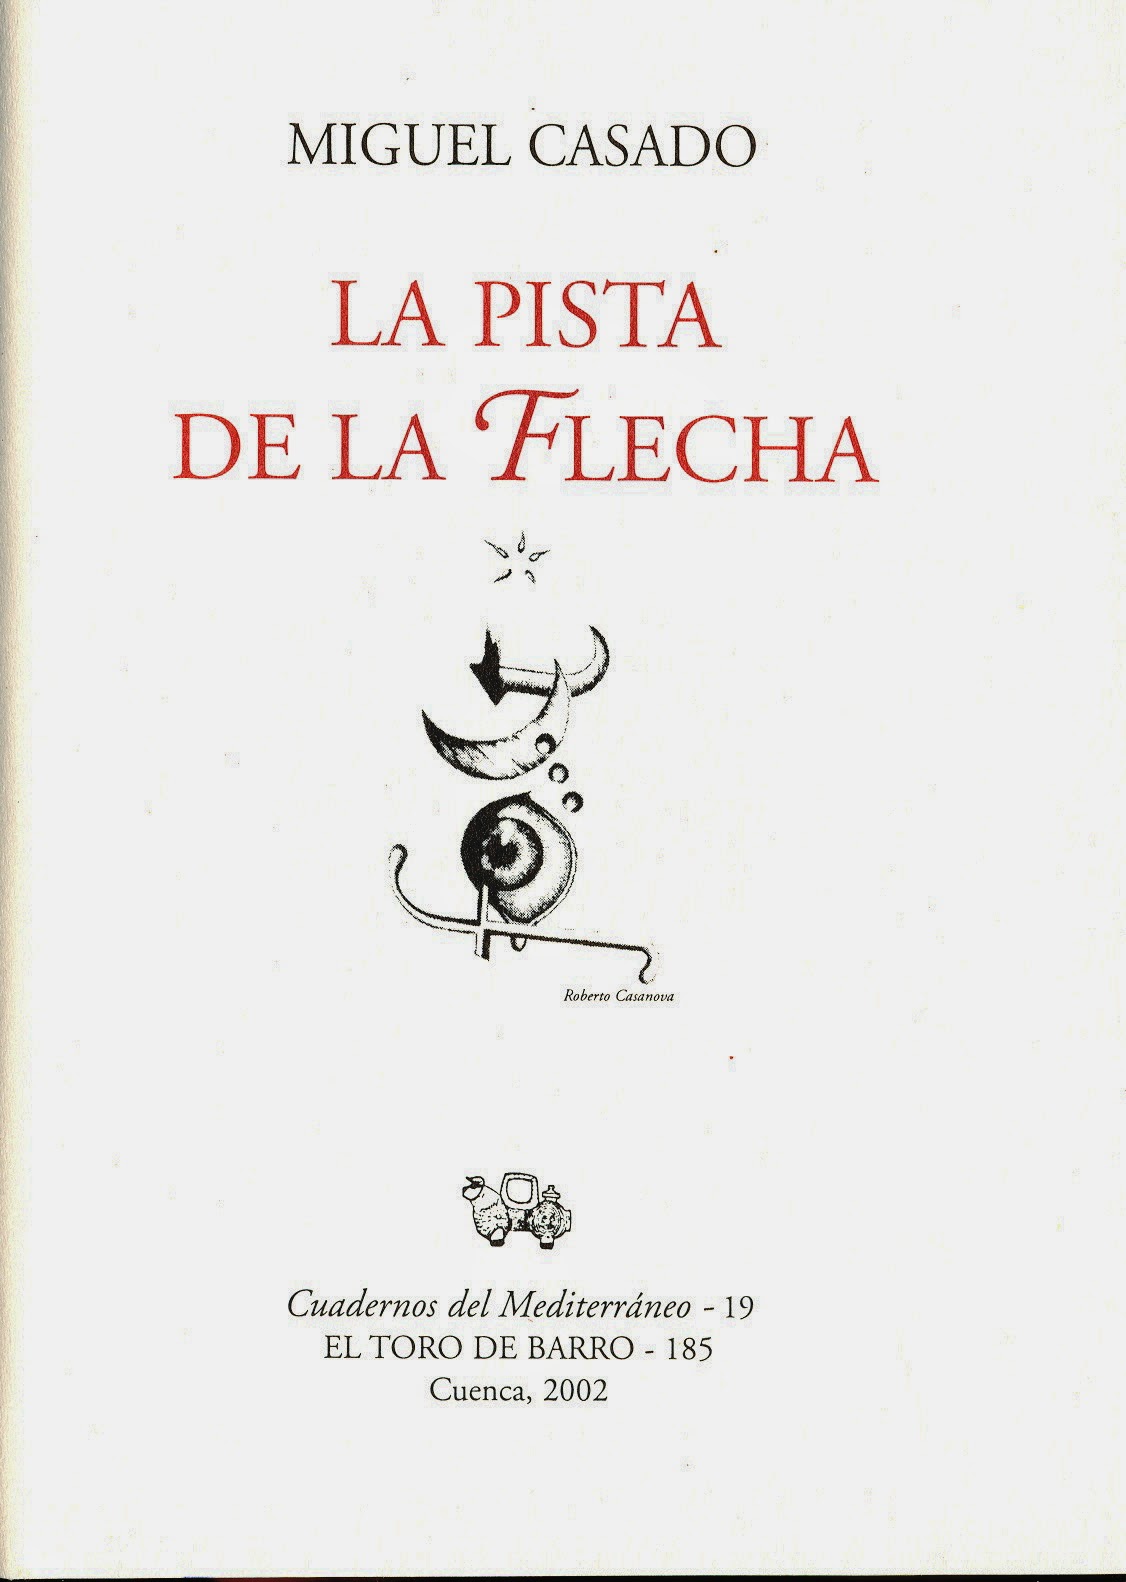 Miguel Casado, "La pista de la flecha", Col. Cuadernos del Mediterráneo, Ed. El Toro de Barro, Tarancón de Cuenca 2002